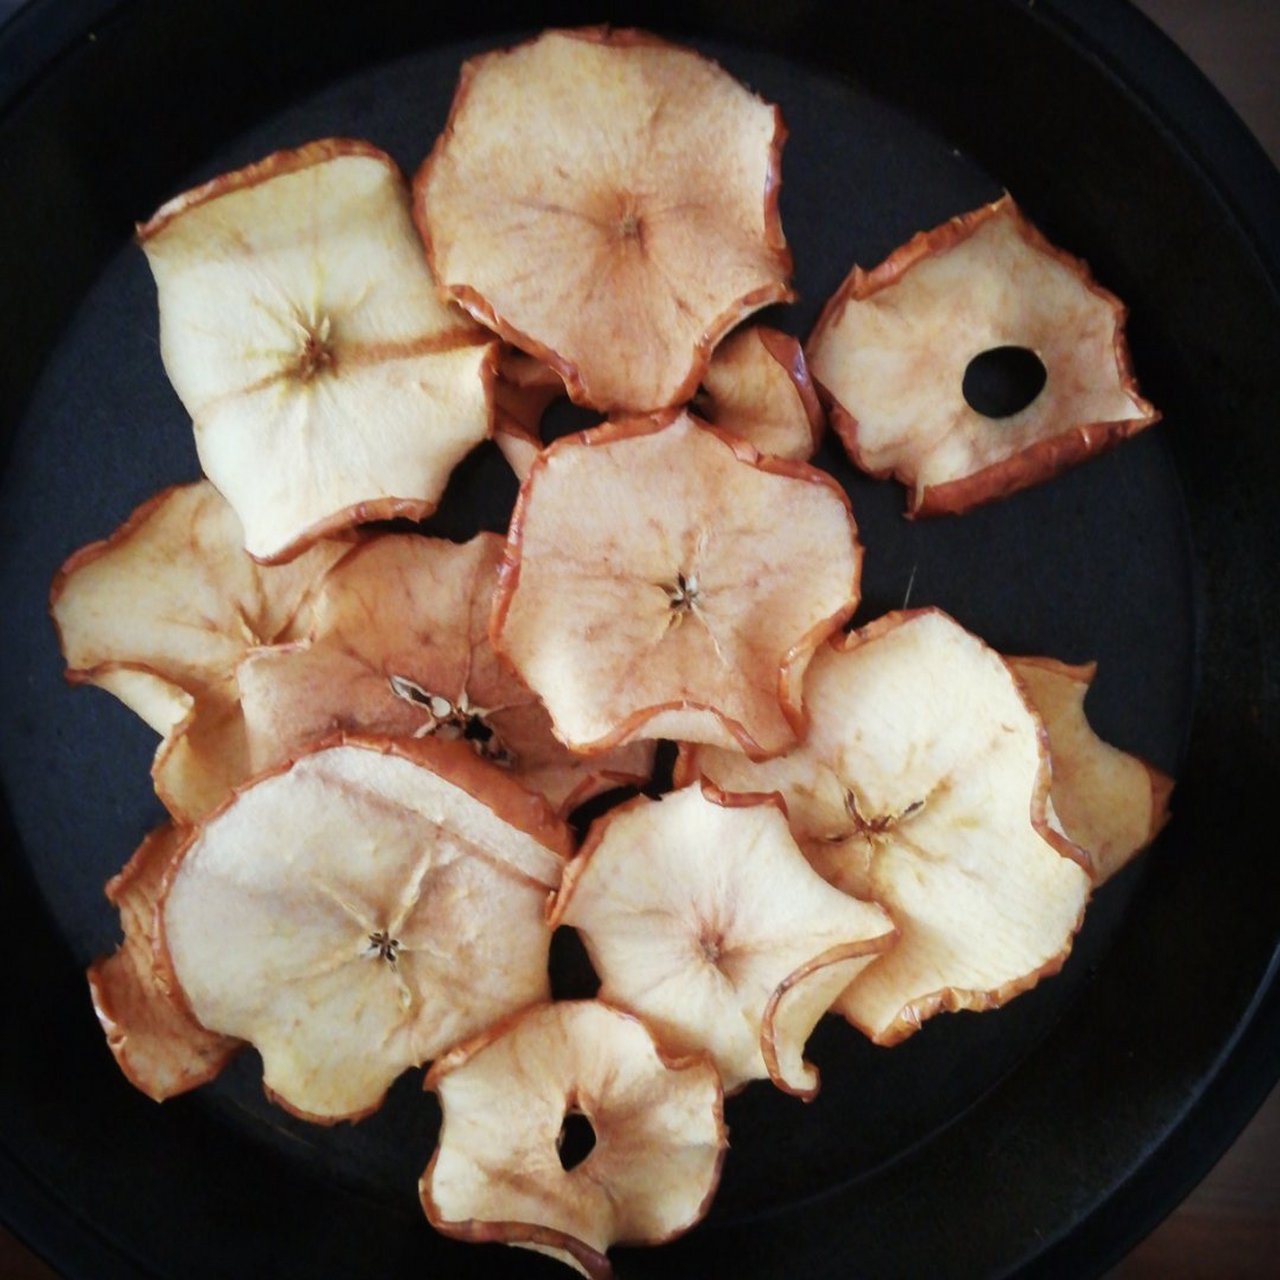 用烤箱烤的苹果片终于成功了,把秘诀分享给你们:苹果切1毫米片,上下火